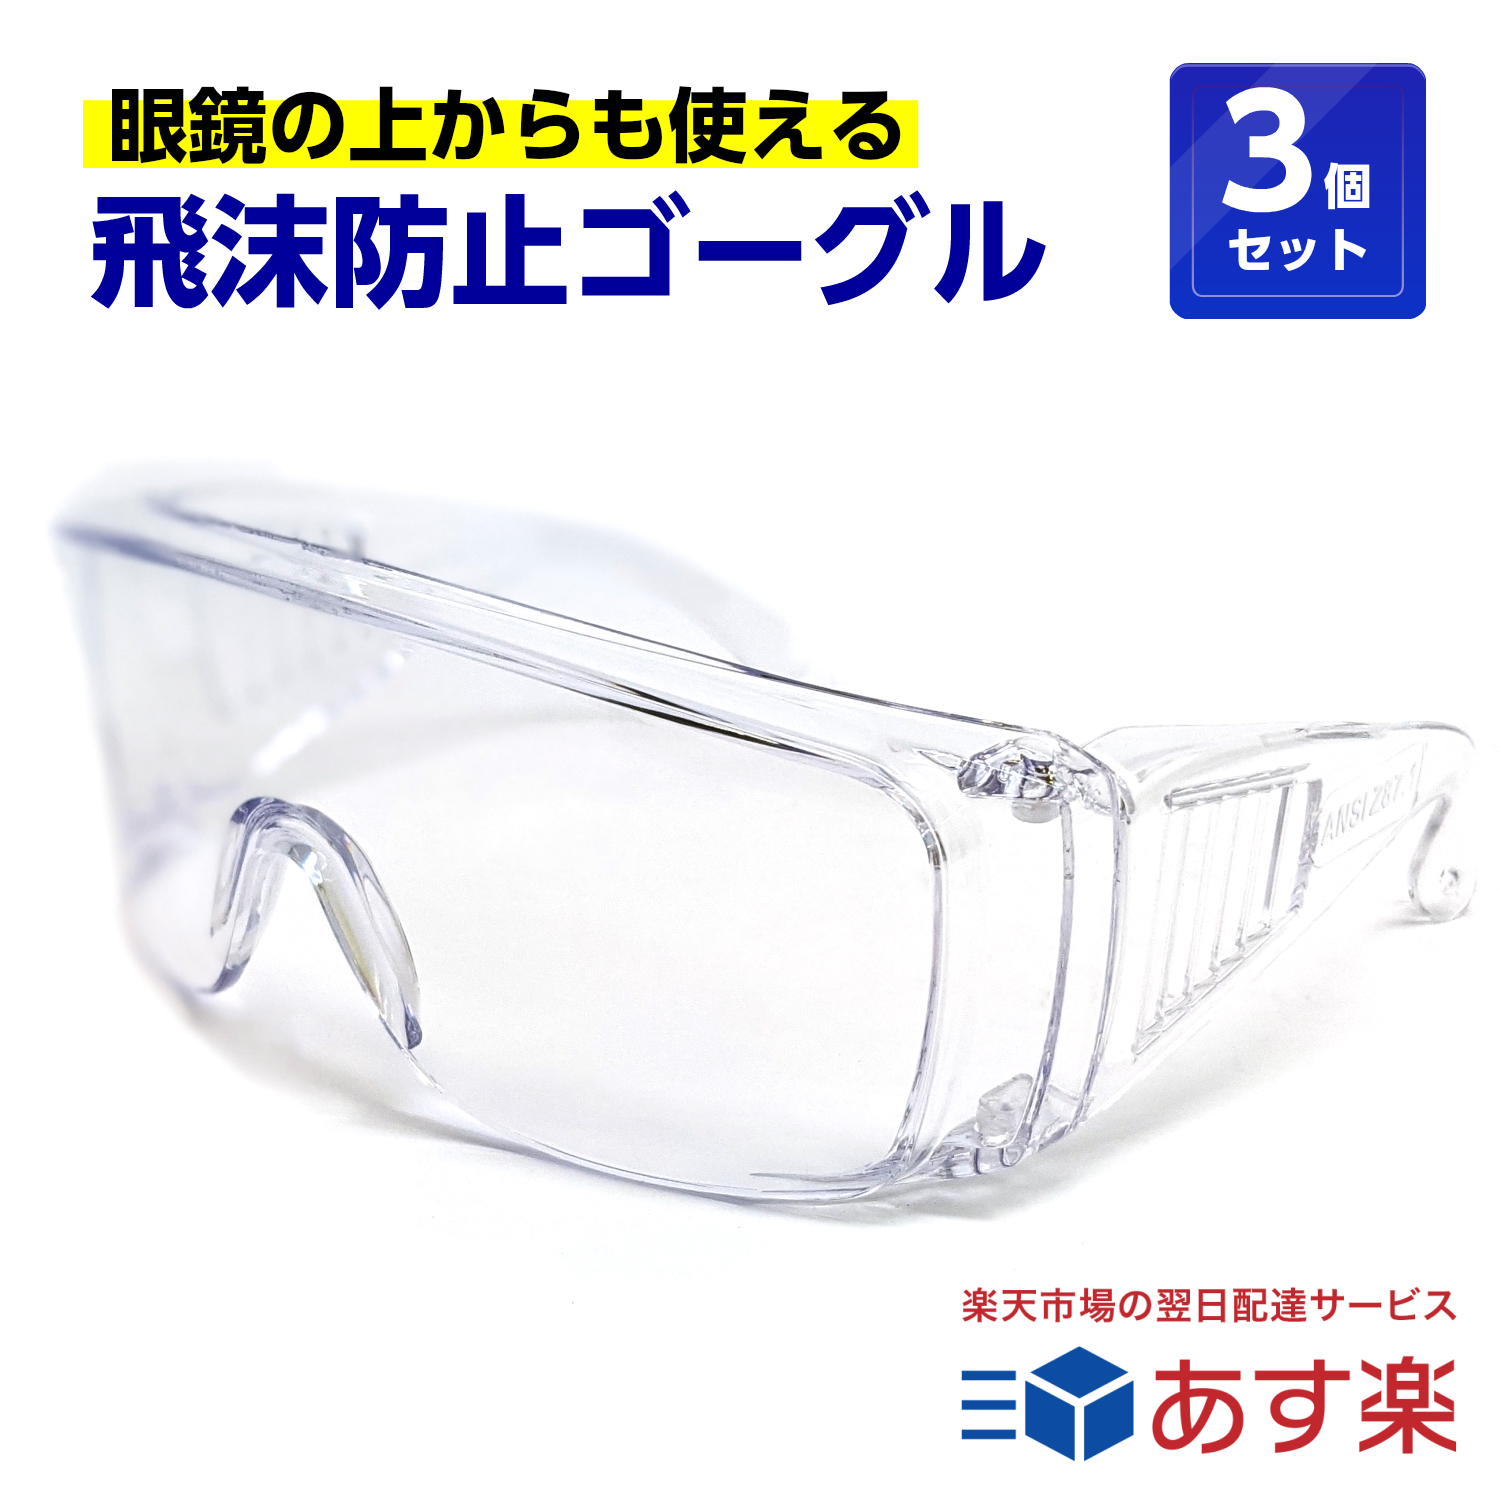 人気大割引 ご予約品 3個セット 飛沫防止 保護メガネ 眼鏡の上から使えます くもらないセフティグラス 介護 医療 rsl tkh visualstorytellersfund.org visualstorytellersfund.org